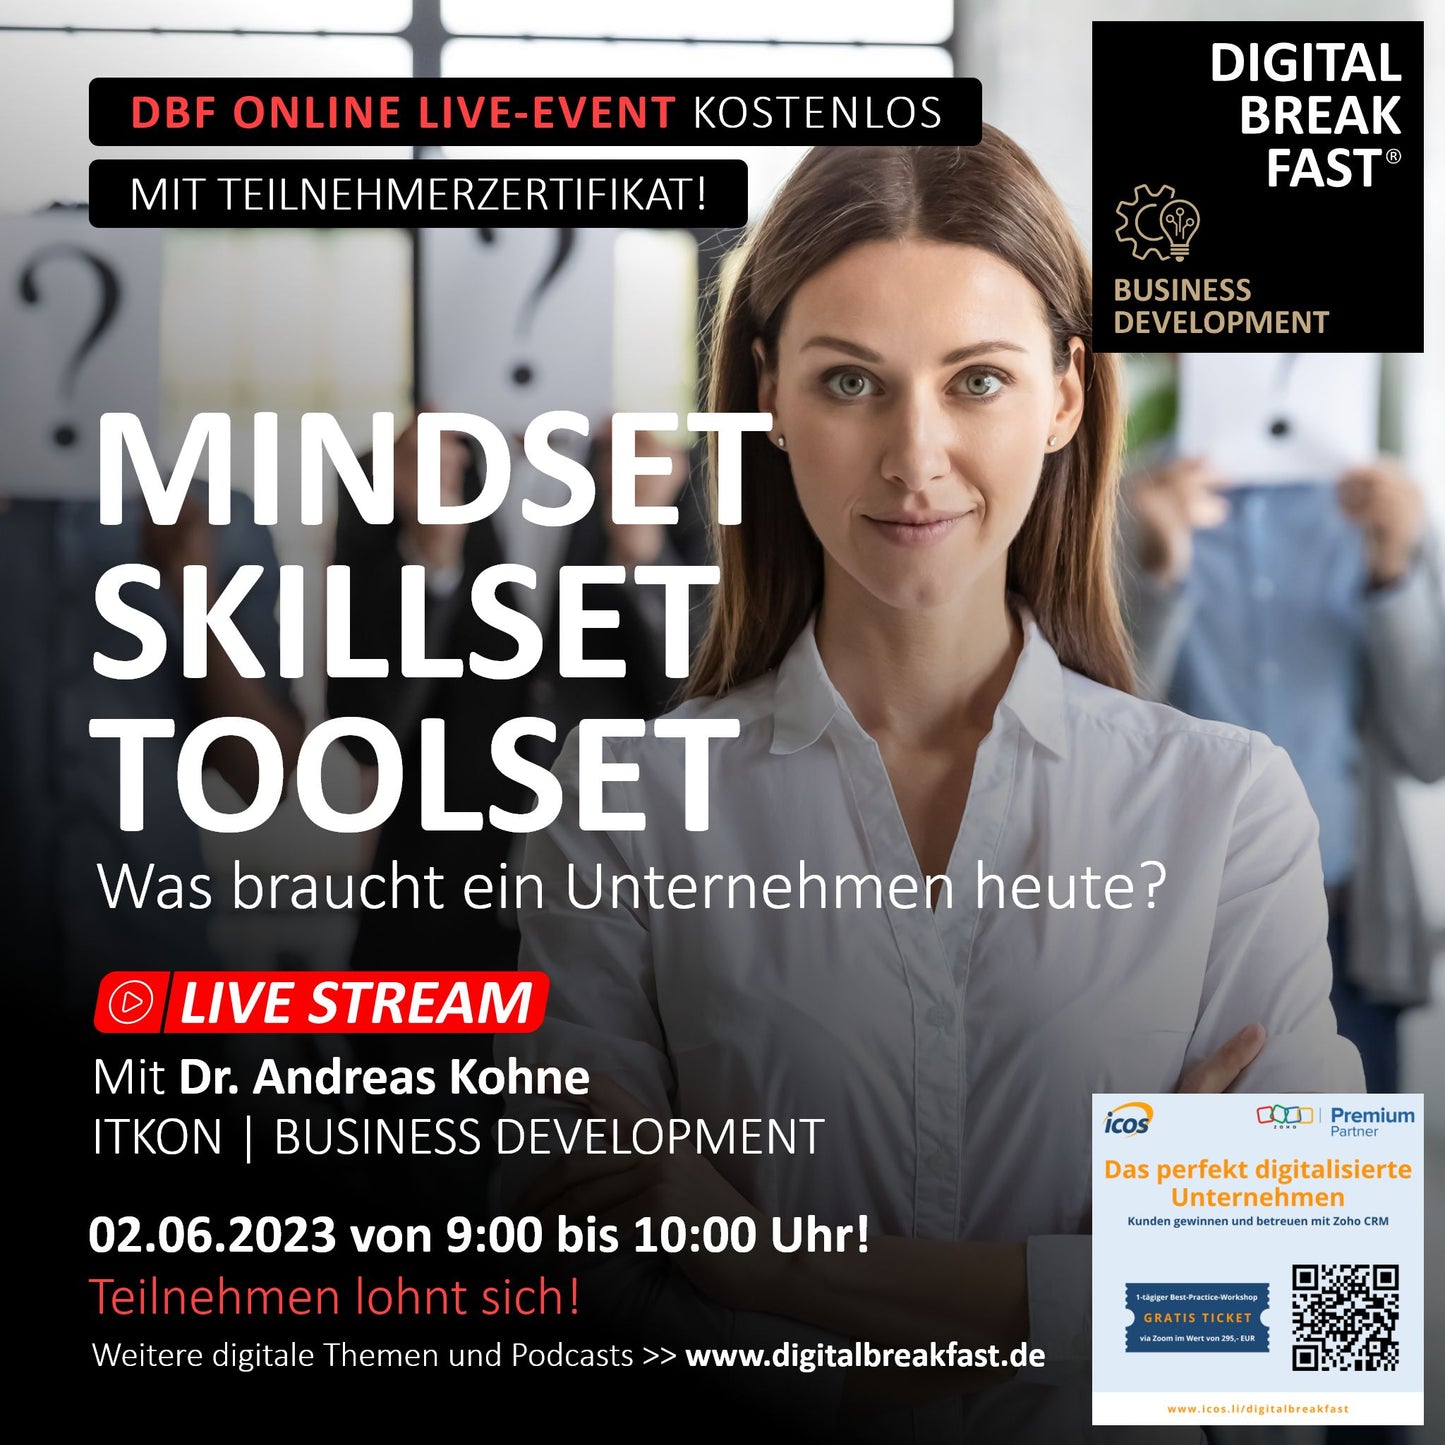 02.06.2023 | "Mindset, Skillset, Toolset - Was braucht ein Unternehmen heute?" | Dr. Andreas Kohne | Business Development